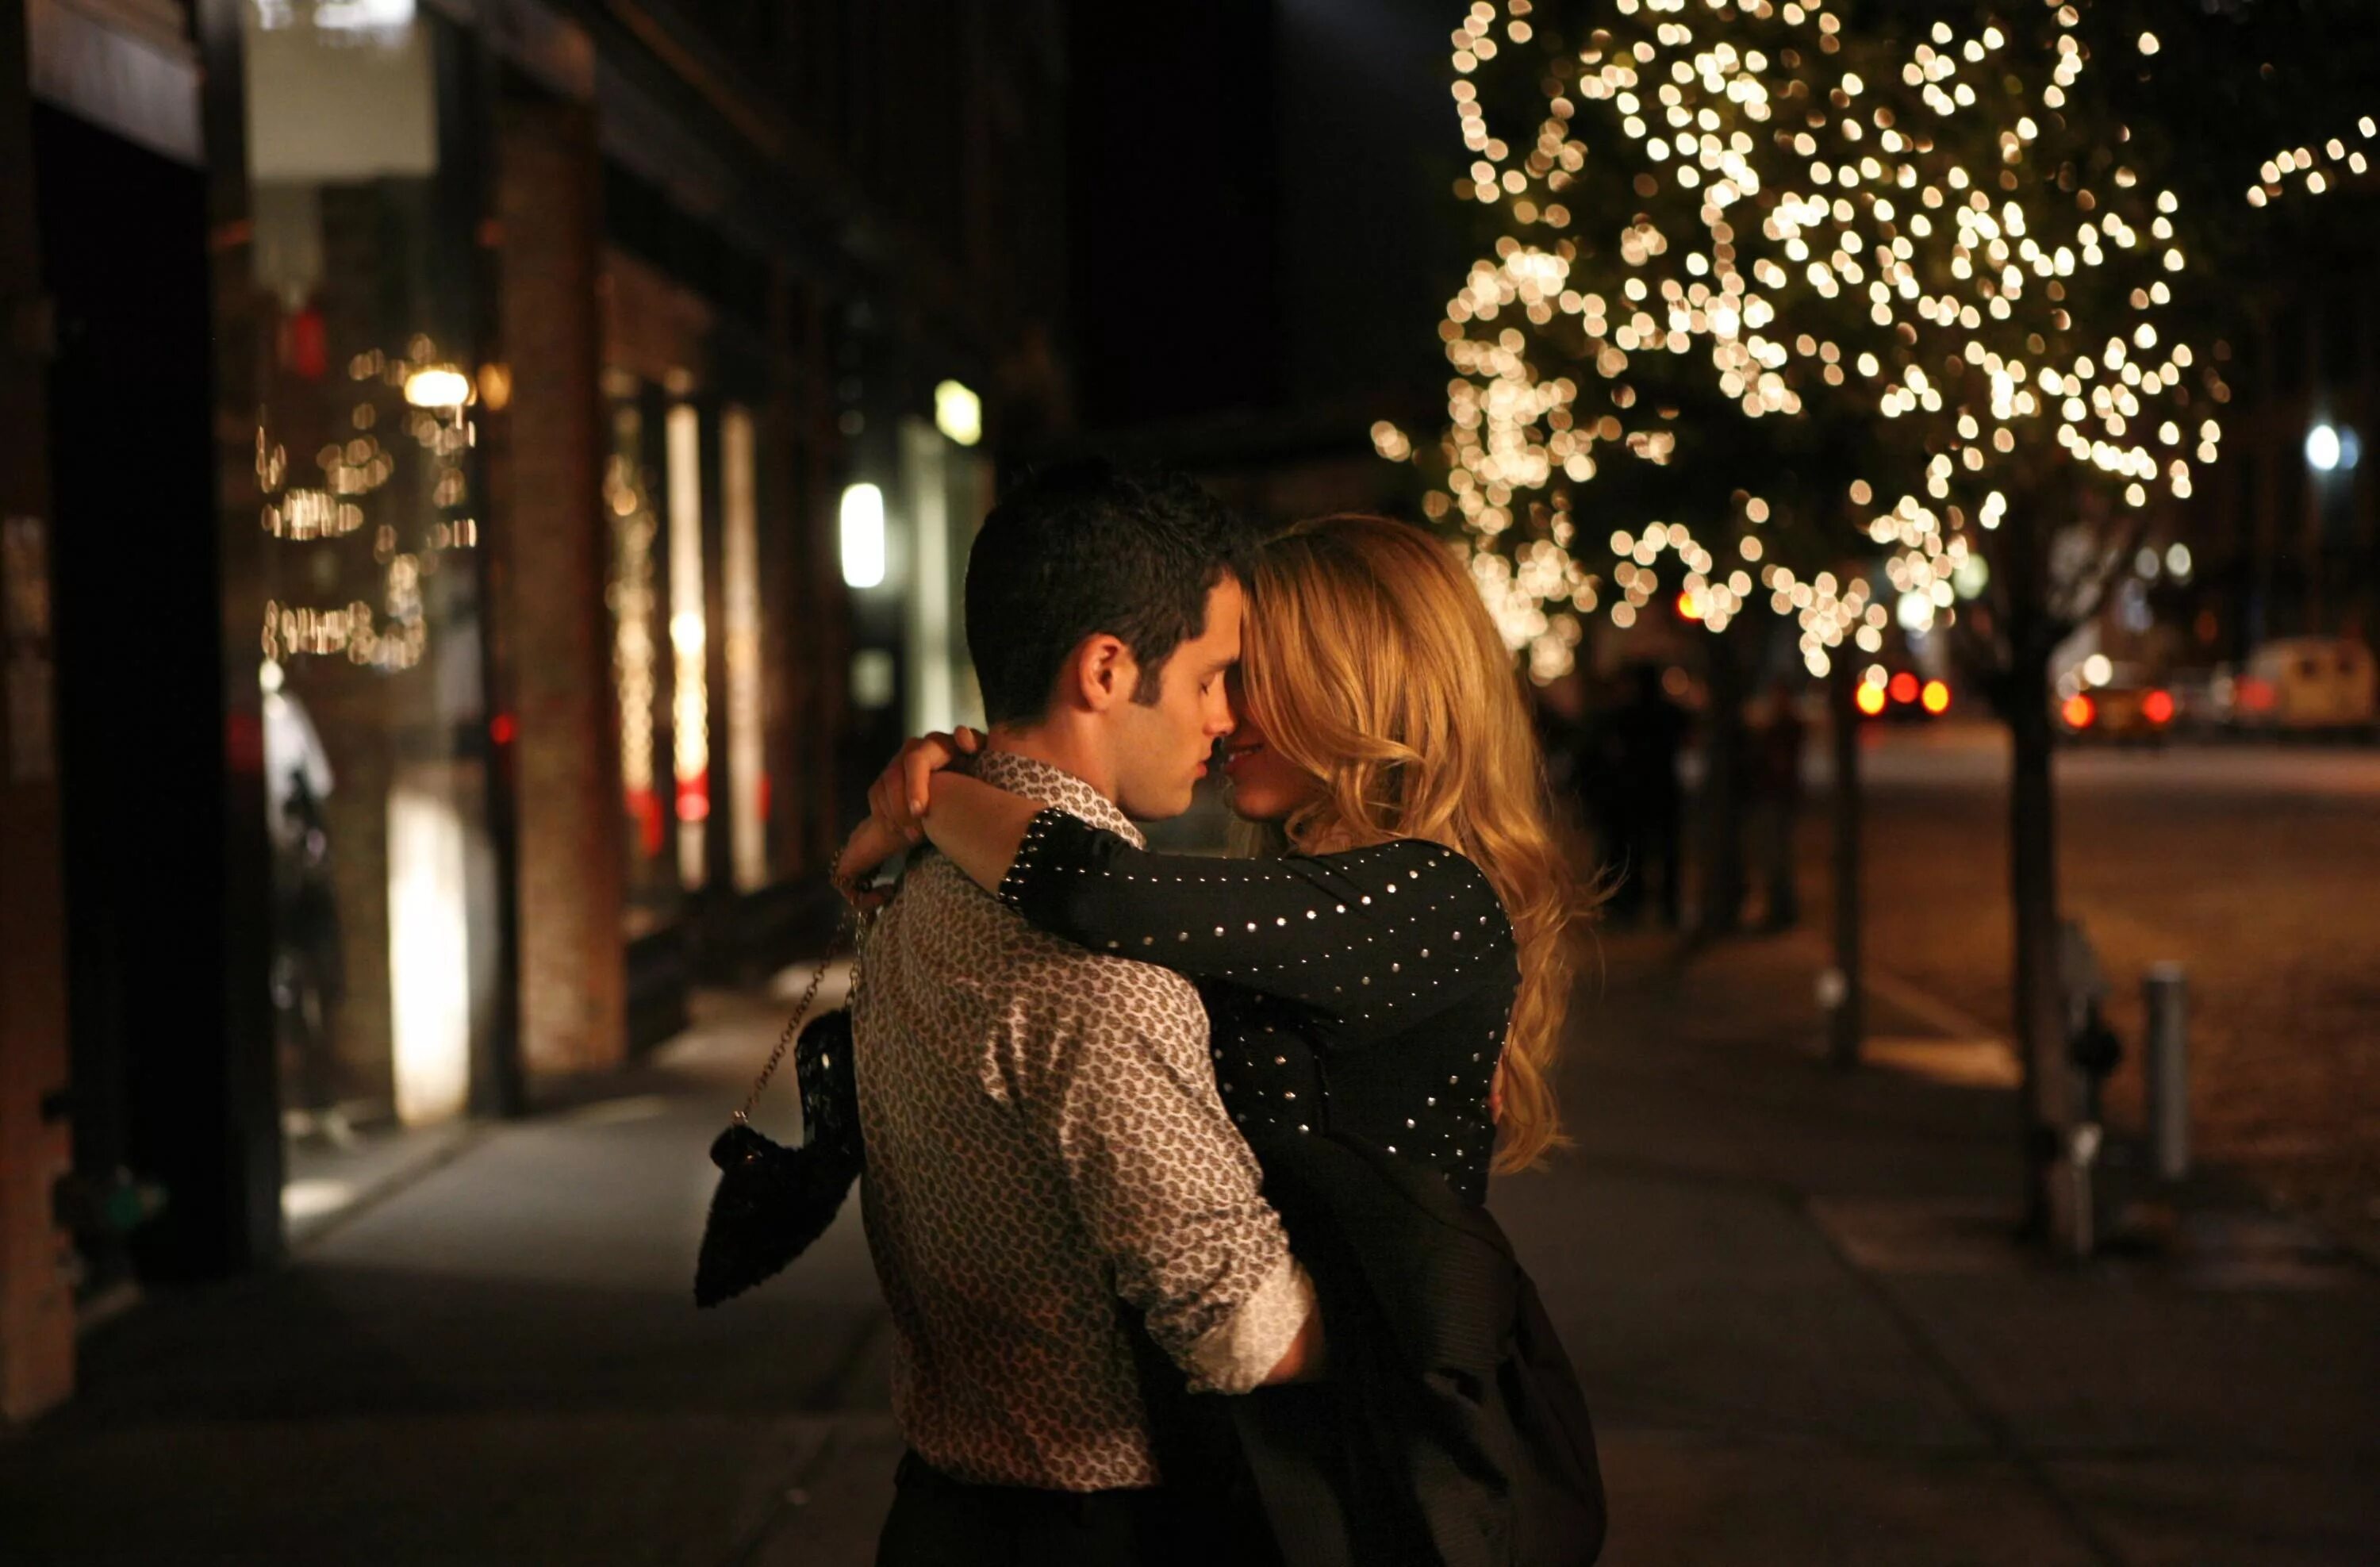 Парень целуется на улице. Влюбленная пара вечером. Романтическая встреча влюбленных. Влюбленные на улице. Поцелуй вечером на улице.